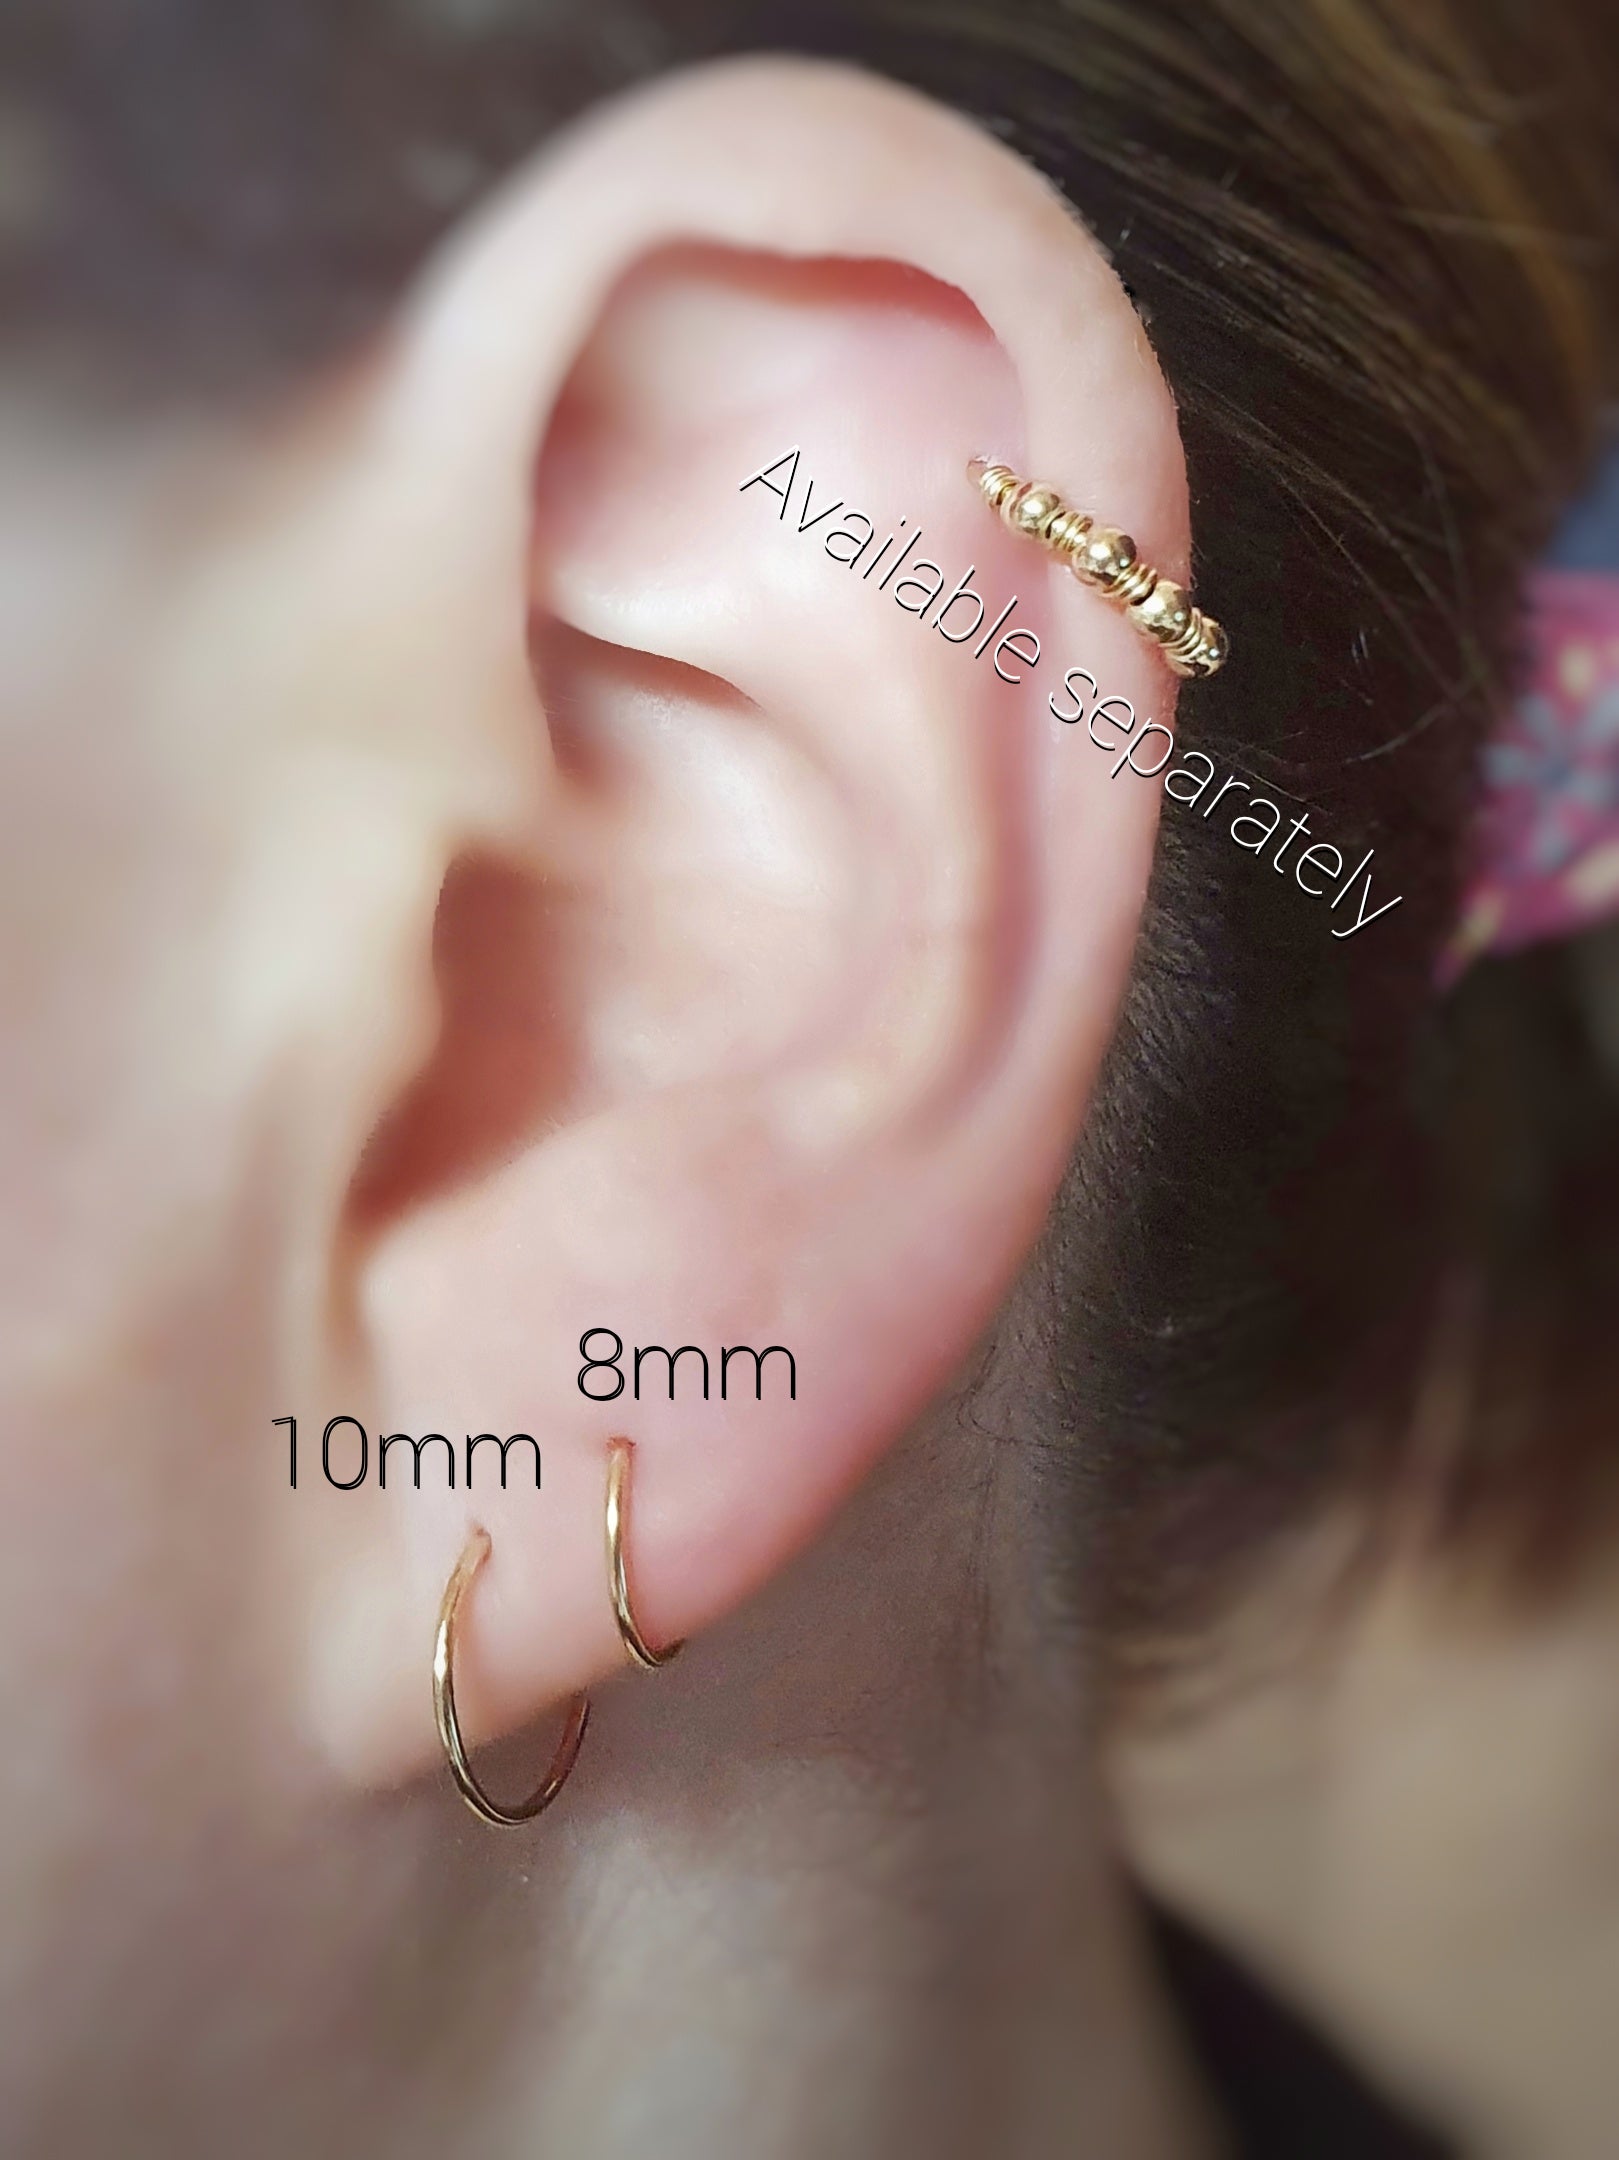 Fine Jewellery London UK - 𝗱𝗶𝗳𝗳𝗲𝗿𝗲𝗻𝘁 𝘁𝘆𝗽𝗲𝘀 𝗼𝗳 𝗲𝗮𝗿  𝗽𝗶𝗲𝗿𝗰𝗶𝗻𝗴𝘀👂🏼✌🏼 ⠀ ⠀ #earpiercing #earstack #earstyle #curatedear  #earjewellery #earrings #luxurypiercing #18kpiercing #18kearpiercing  #18kgoldpiercing #lenacohen ...